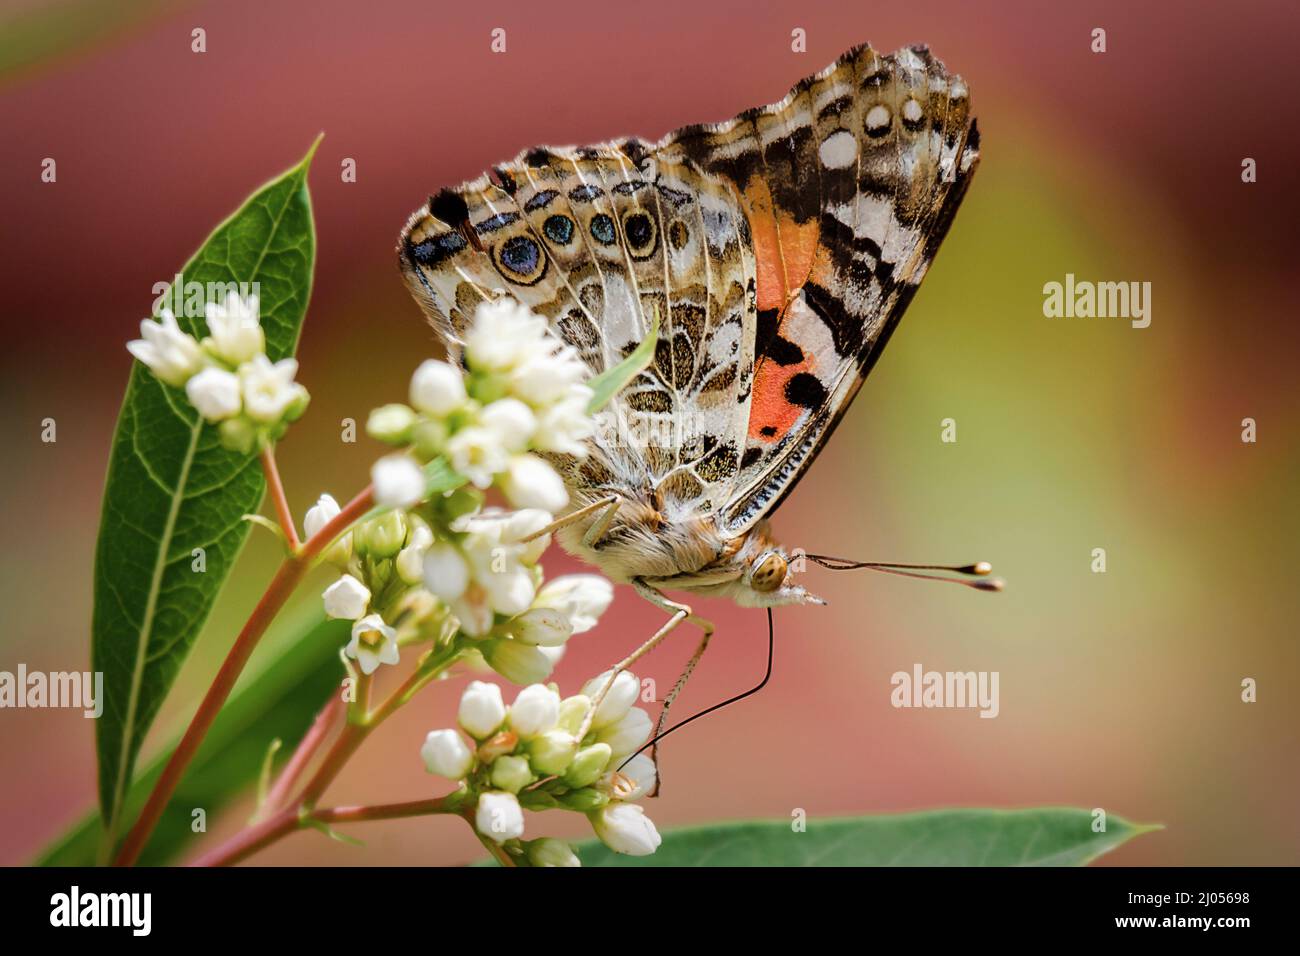 Un papillon peint se nourrit d'un groupe de fleurs. Vue latérale avec ailes fermées. Banque D'Images